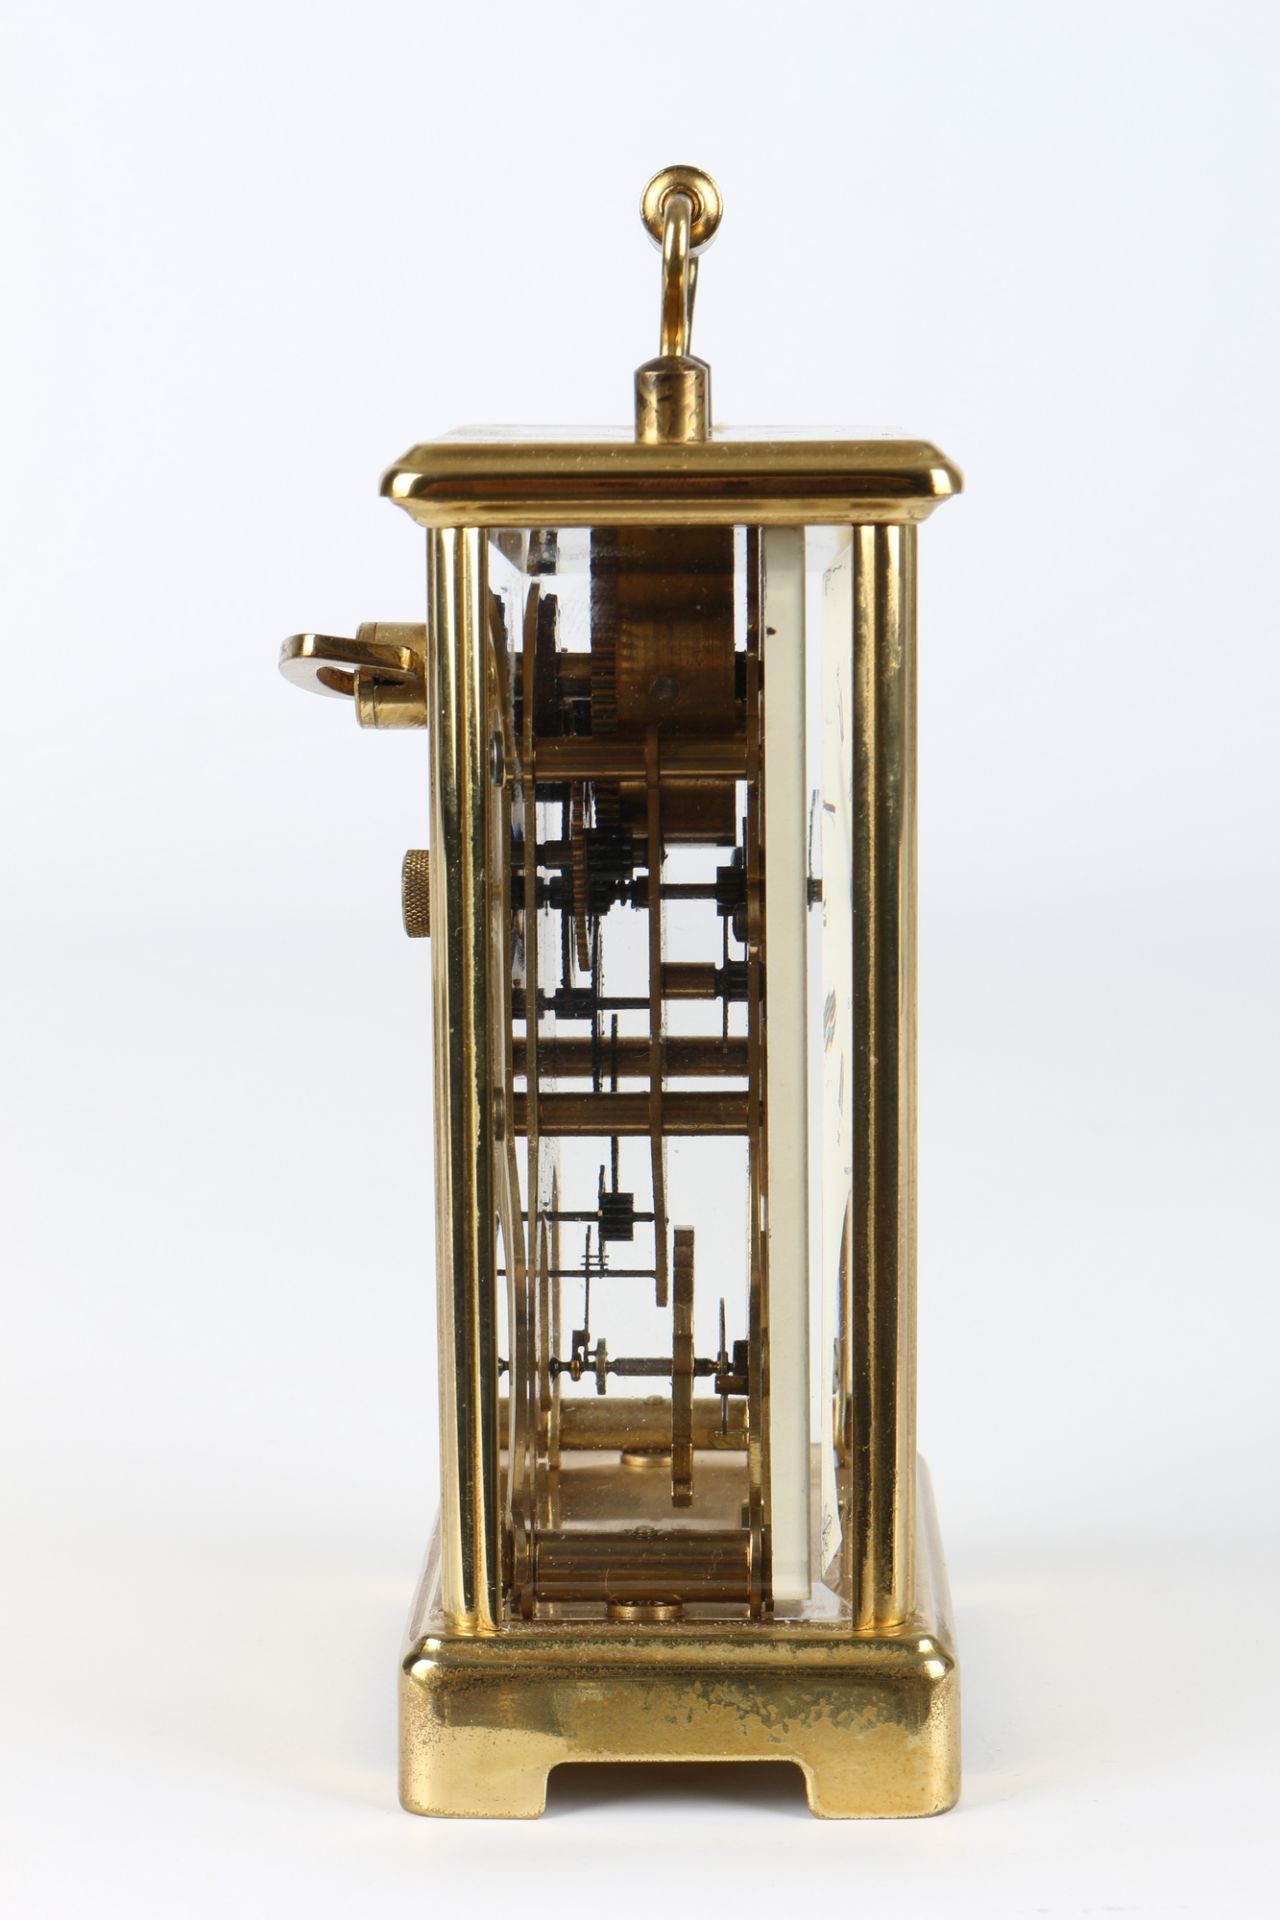 August Schatz Reiseuhr, carriage clock, - Bild 3 aus 5